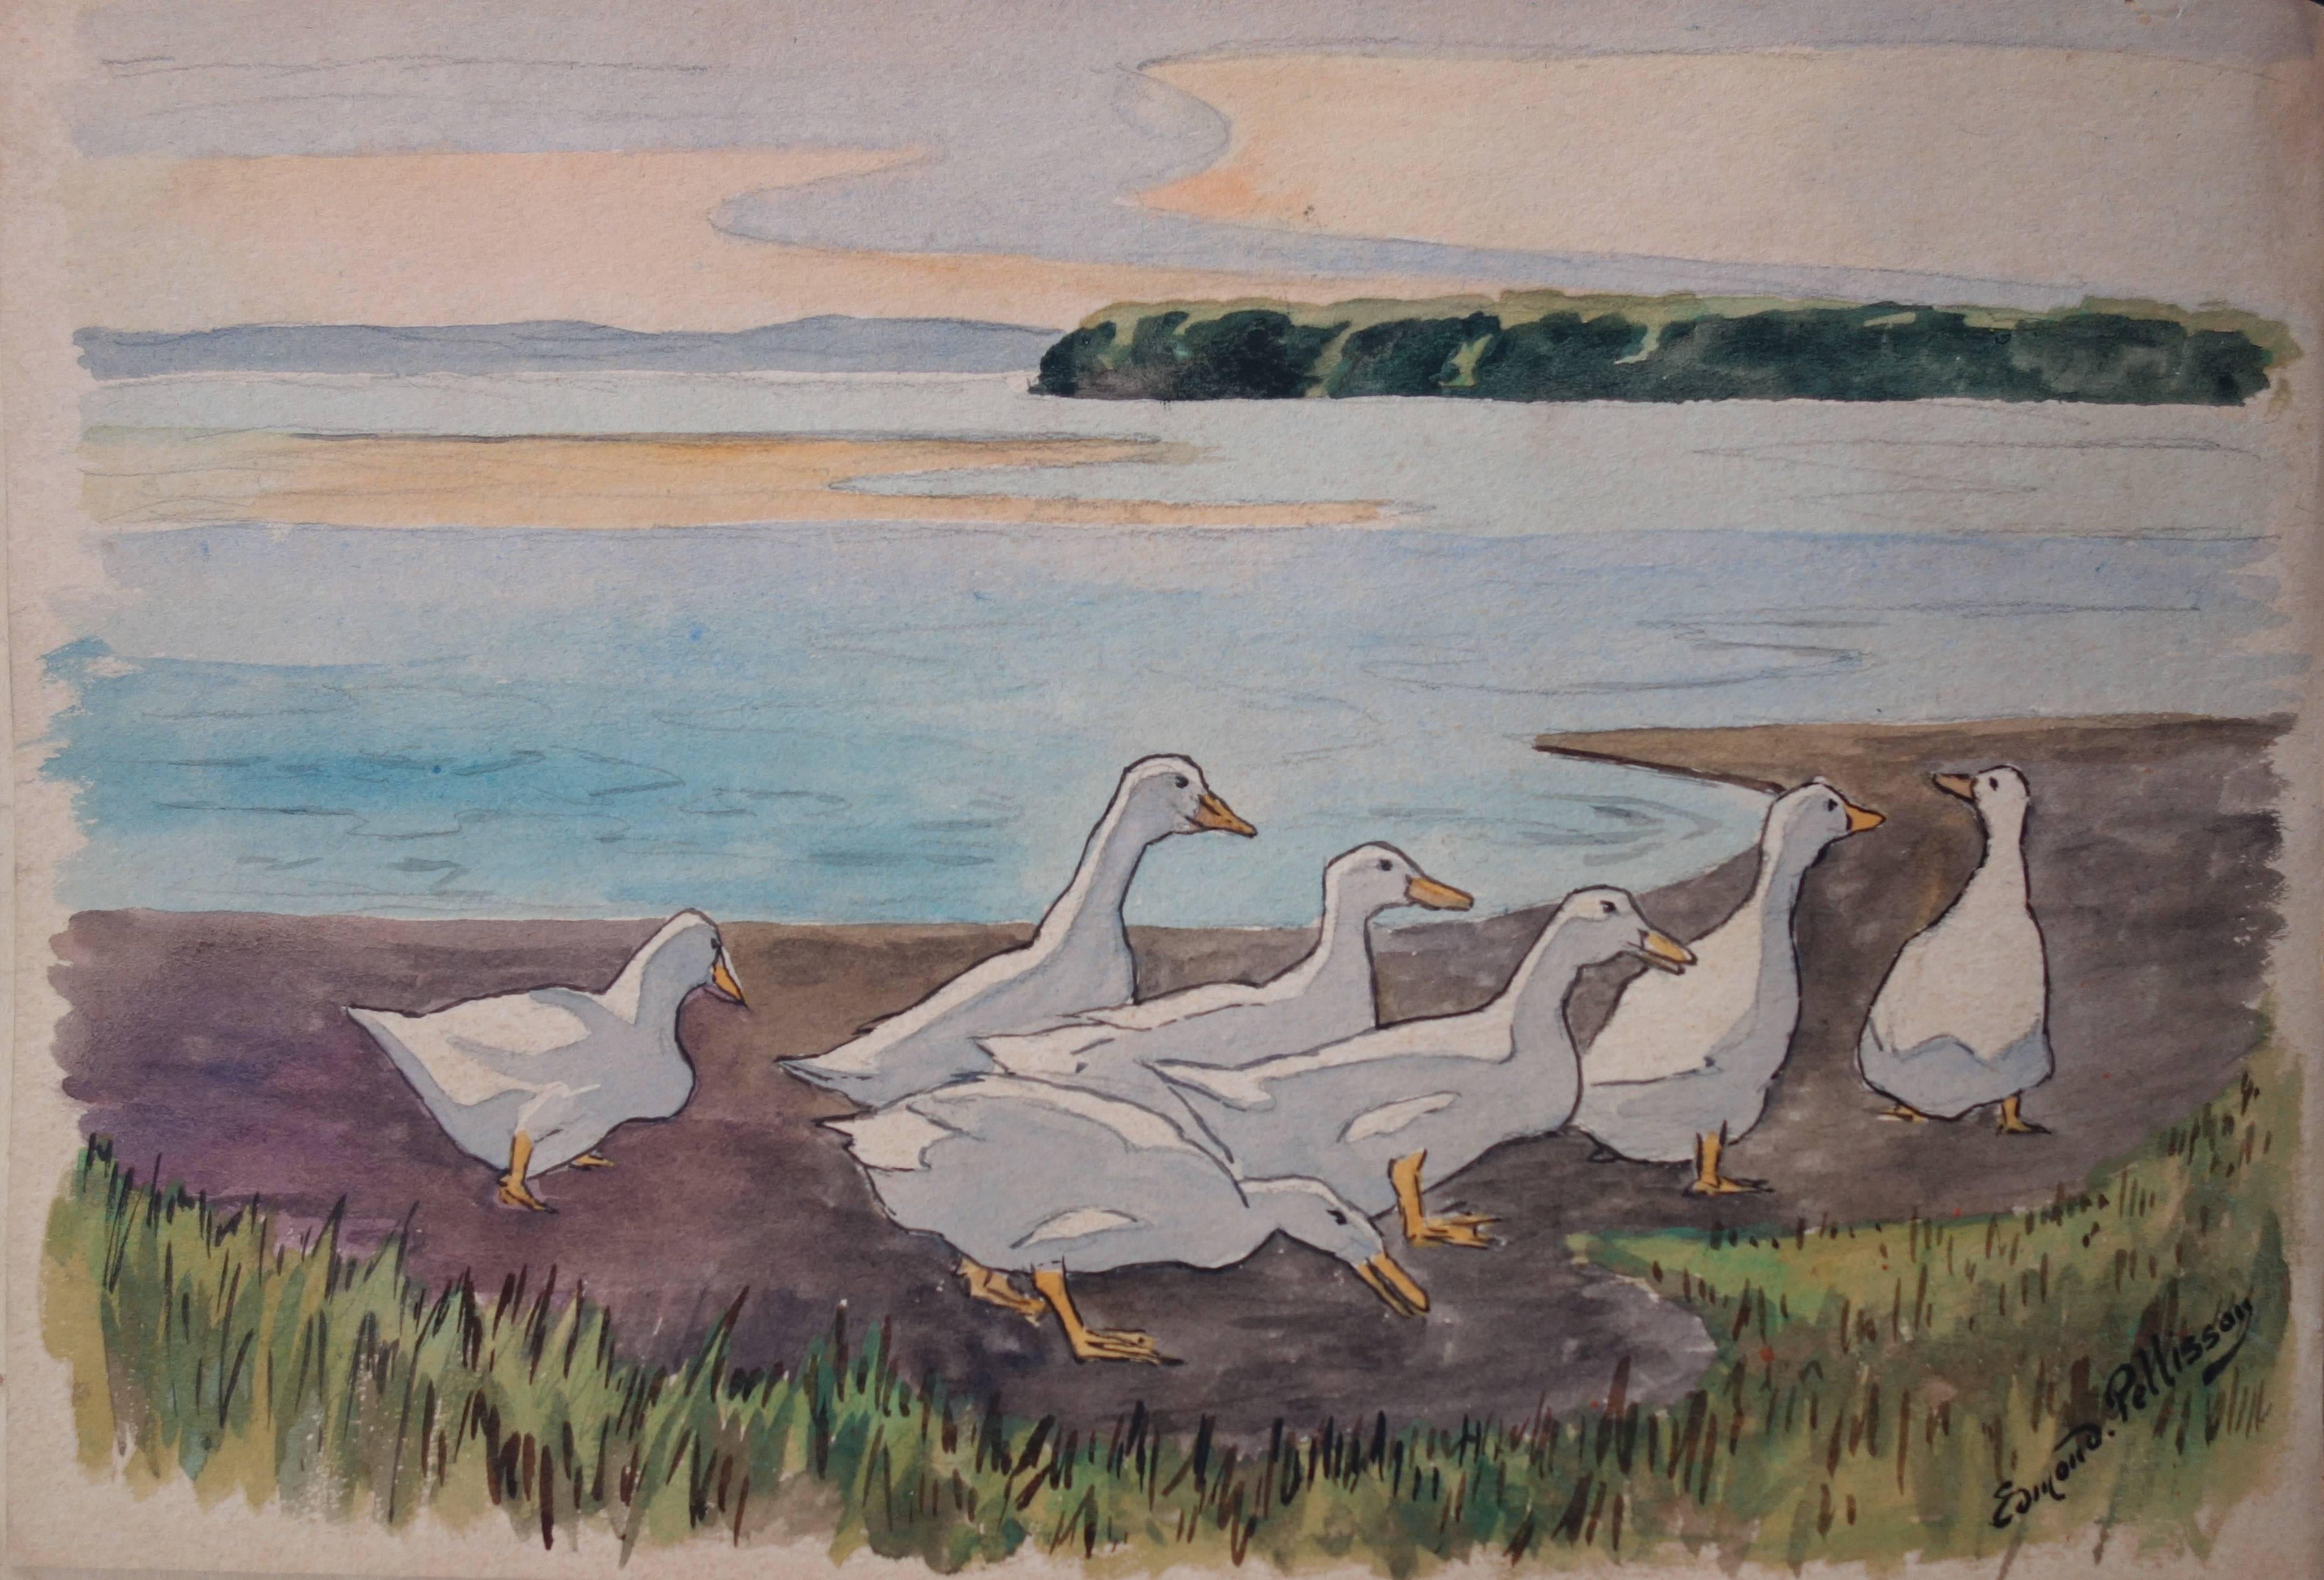 Edmond Pellisson Animal Art - White Ducks Family - Original handsigned watercolor - c. 1899